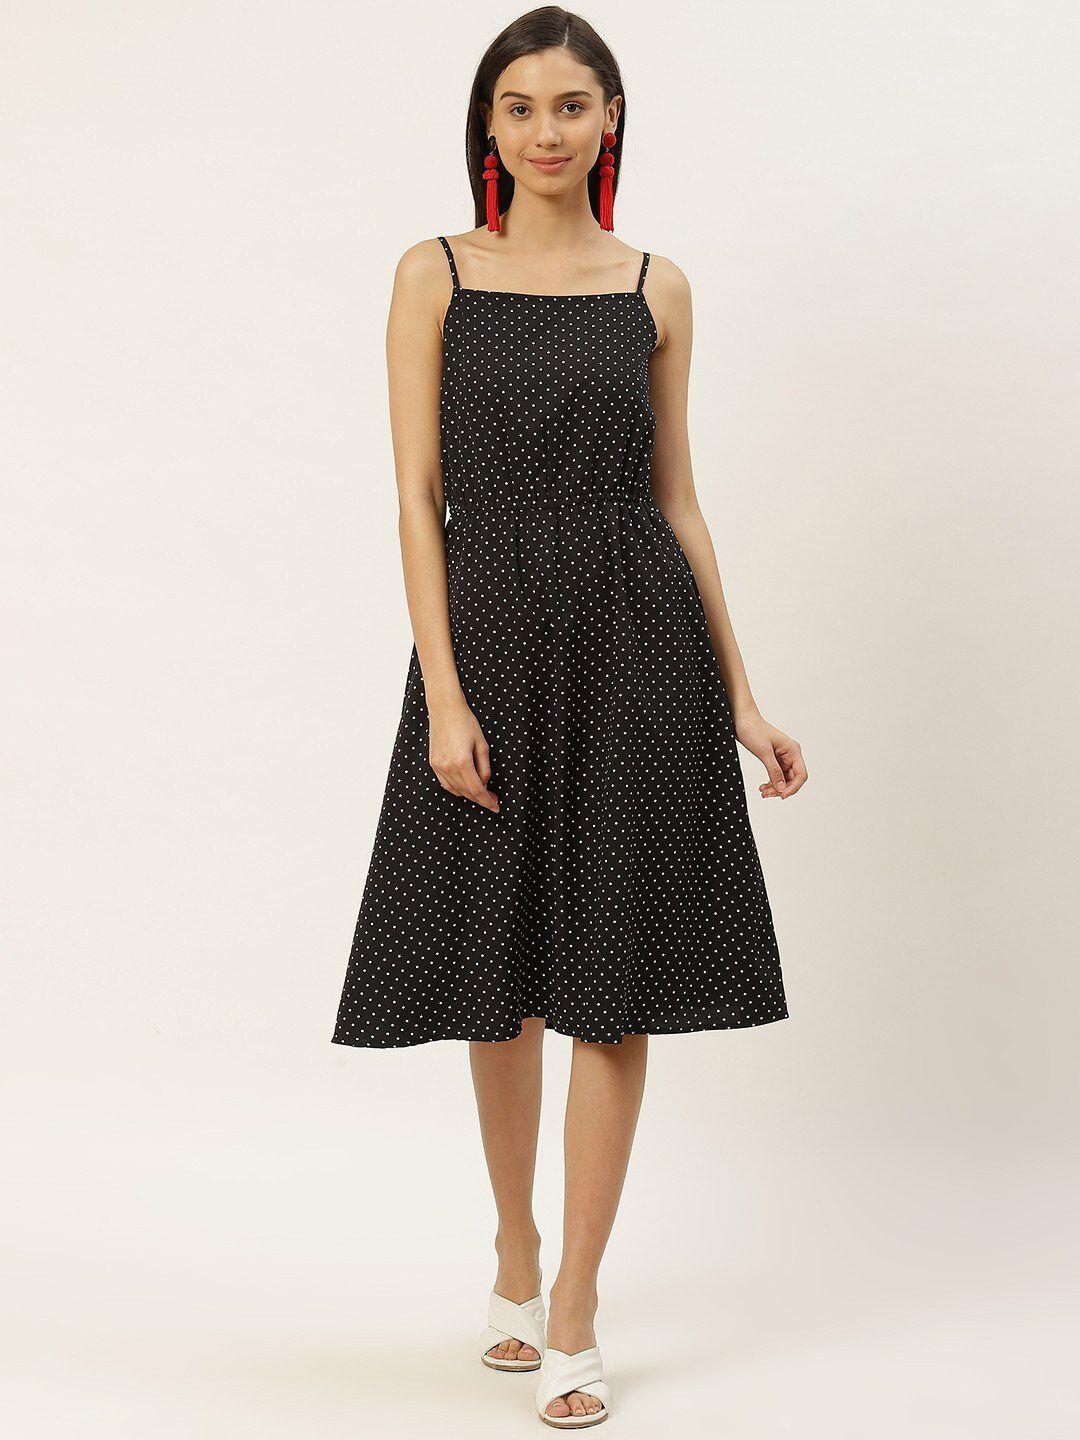 rivi women black & white polka dot crepe a-line dress